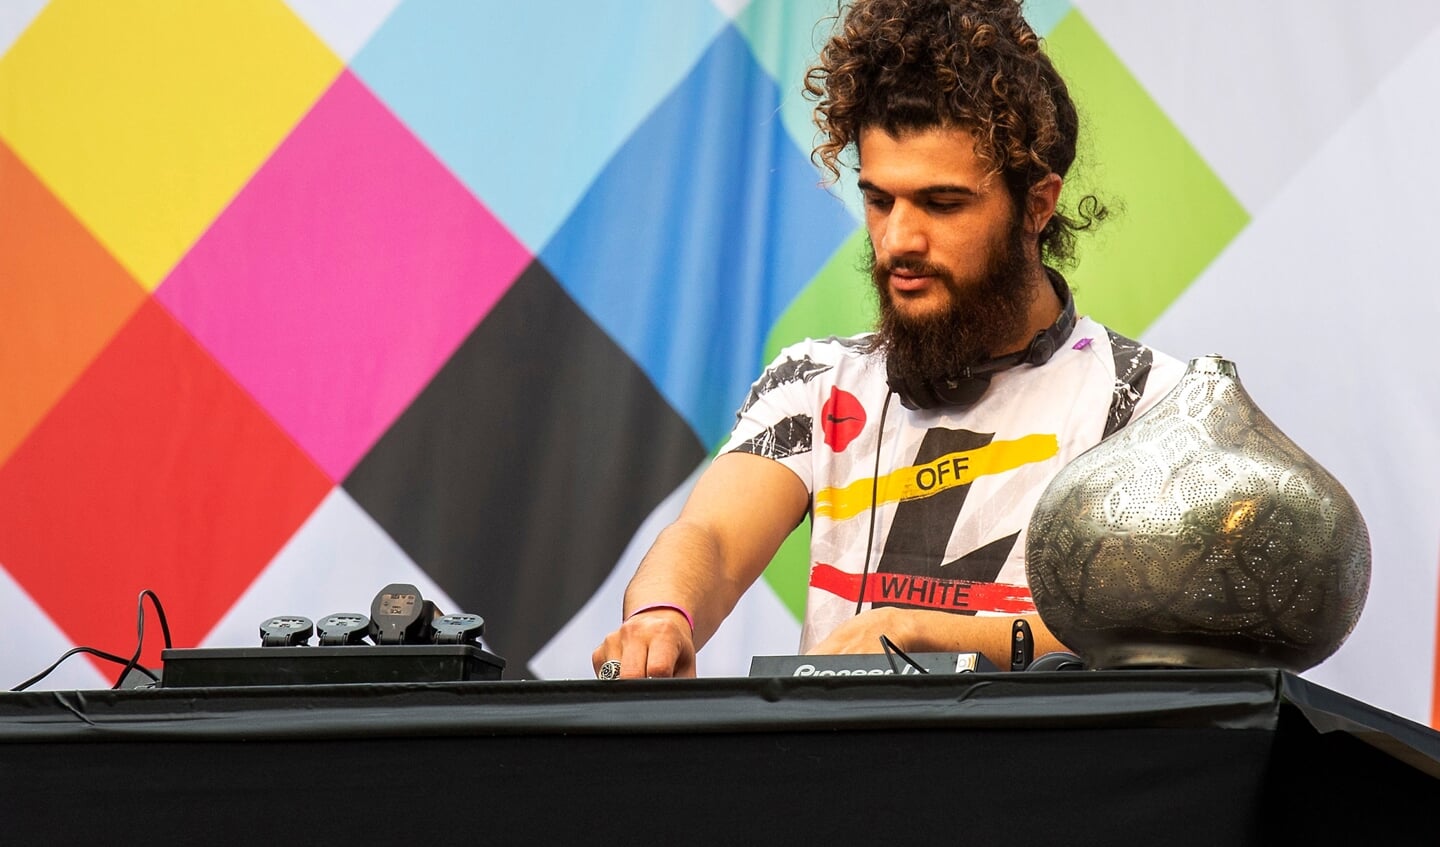 Musica Mundo 
DJ collectief Yallah Yallah